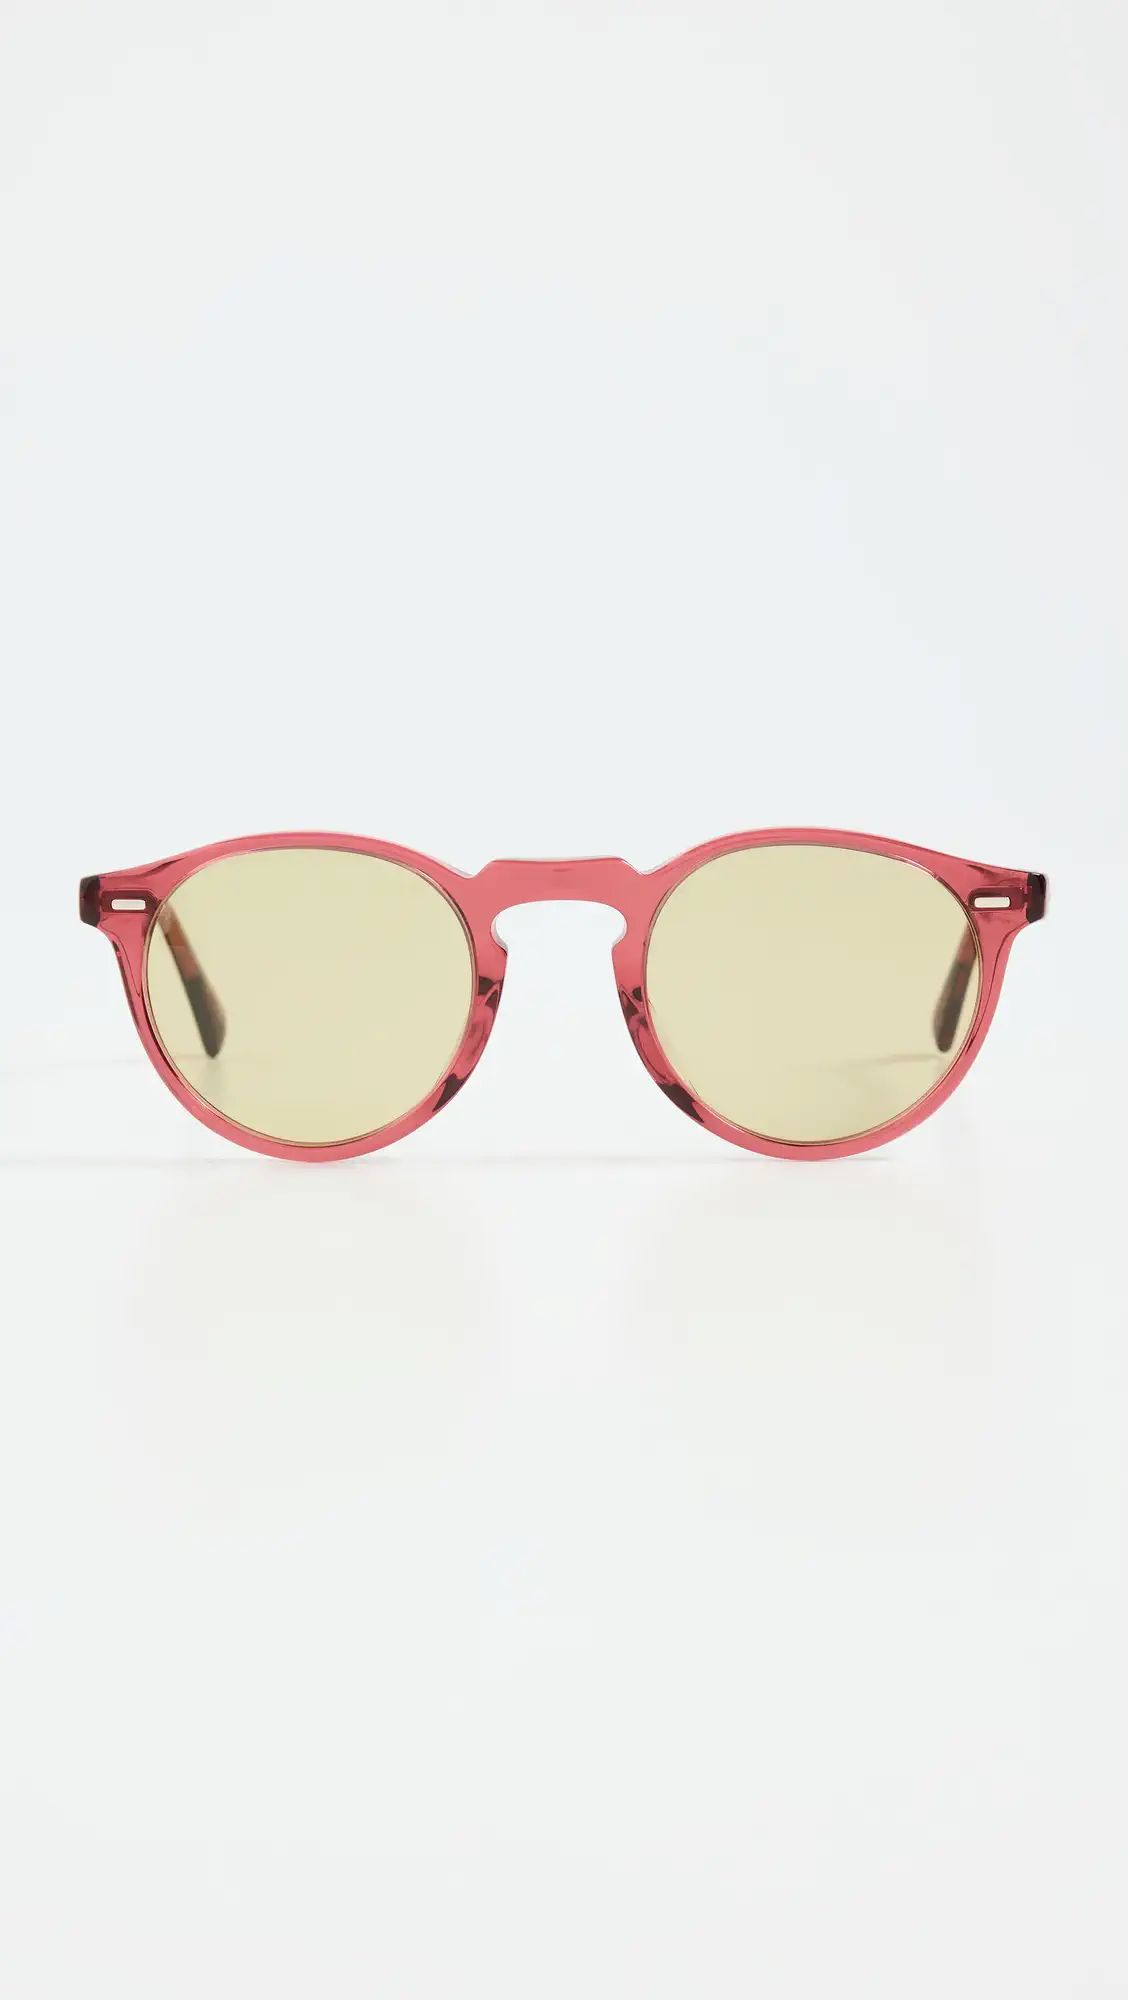 Gregory Peck Sunglasses | Shopbop